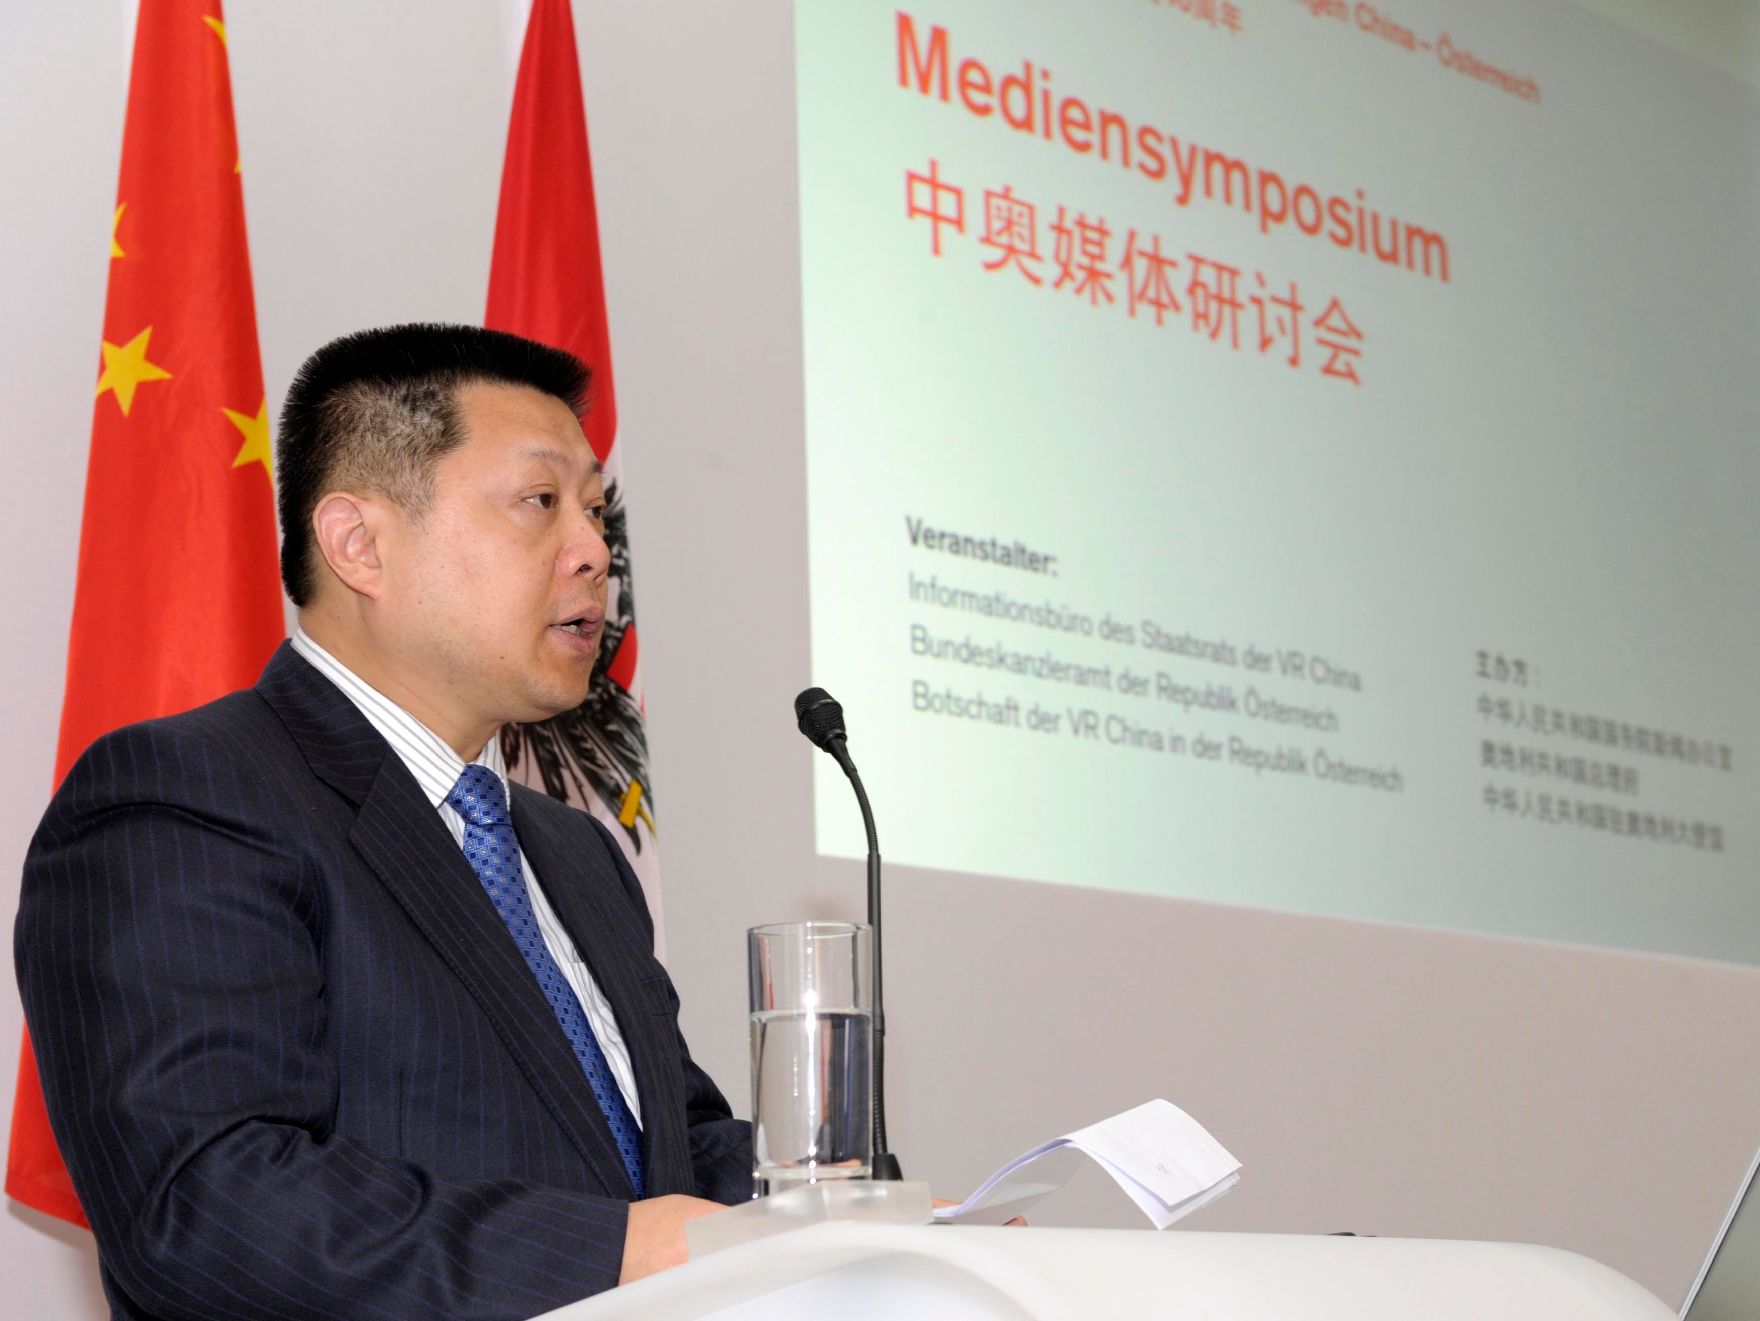 Am 14. September 2011 fand das Mediensymposium Österreich-China in Wien statt. Im Bild der Vizeminister des Informationsbüros der Volksrepublik China, Wang Zhongwei.